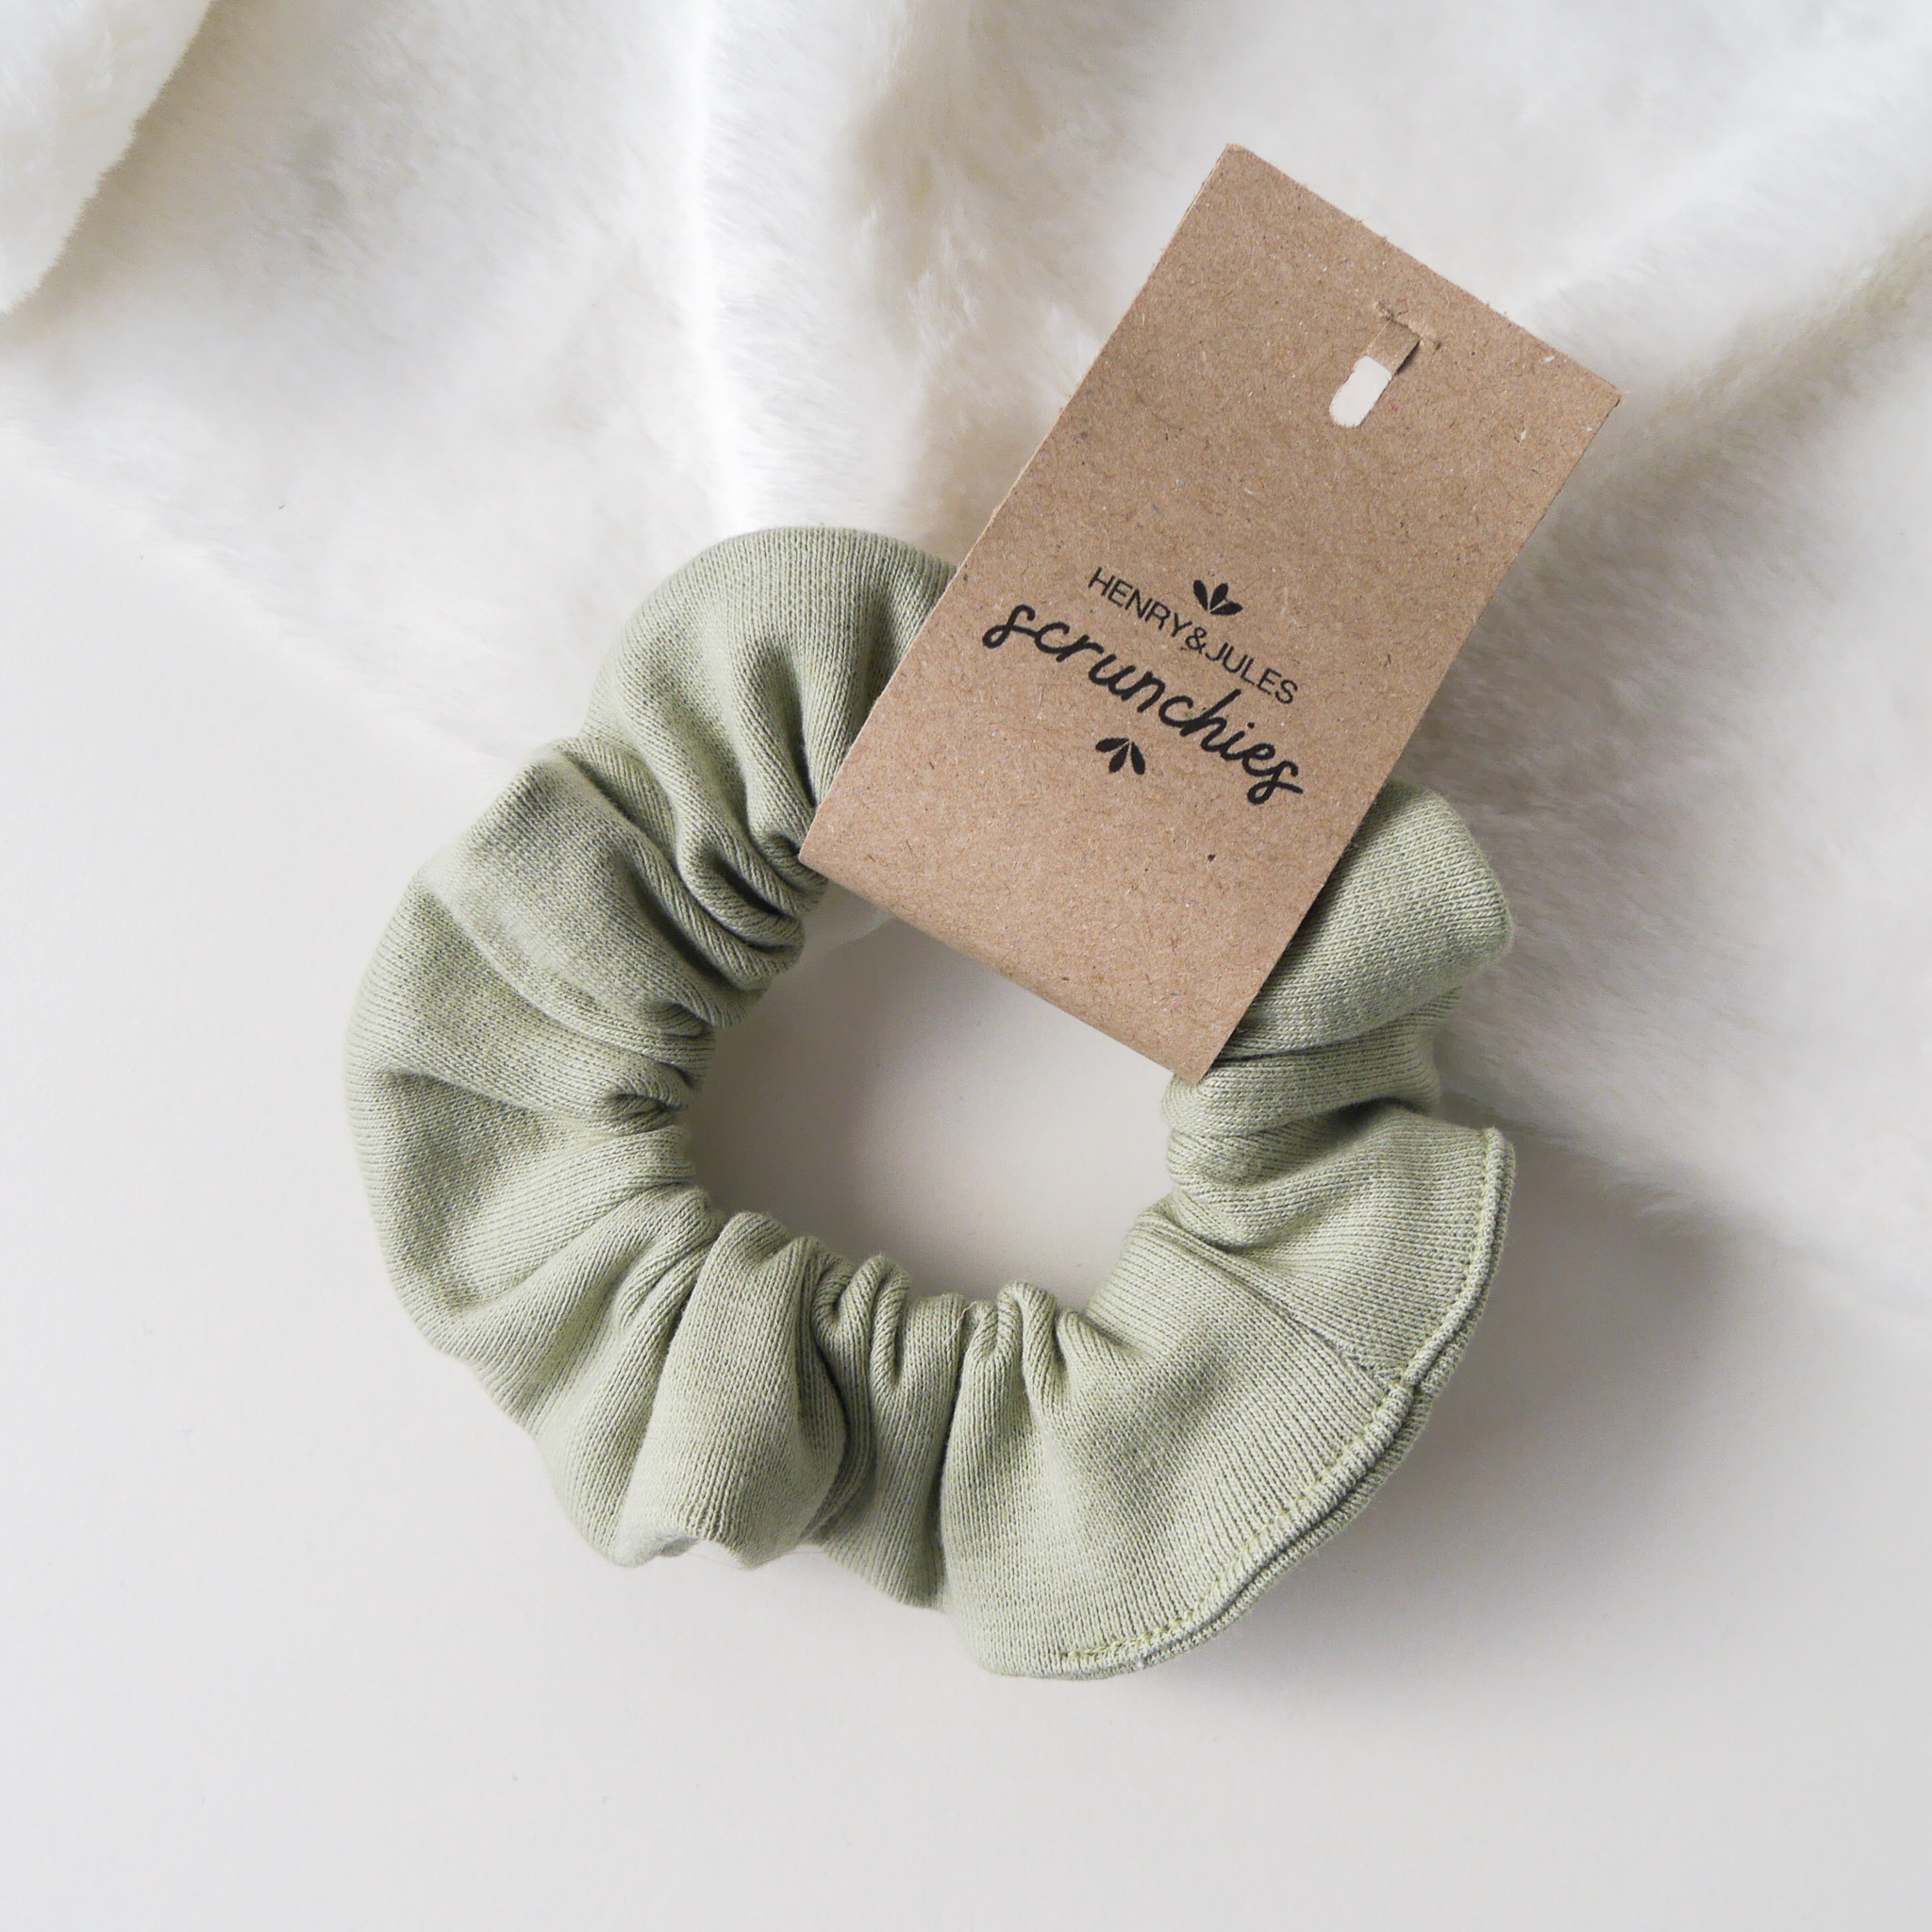 Handgemachtes Haargummi, sogenanntes Scrunchie, aus Stoff in der Farbe Mint